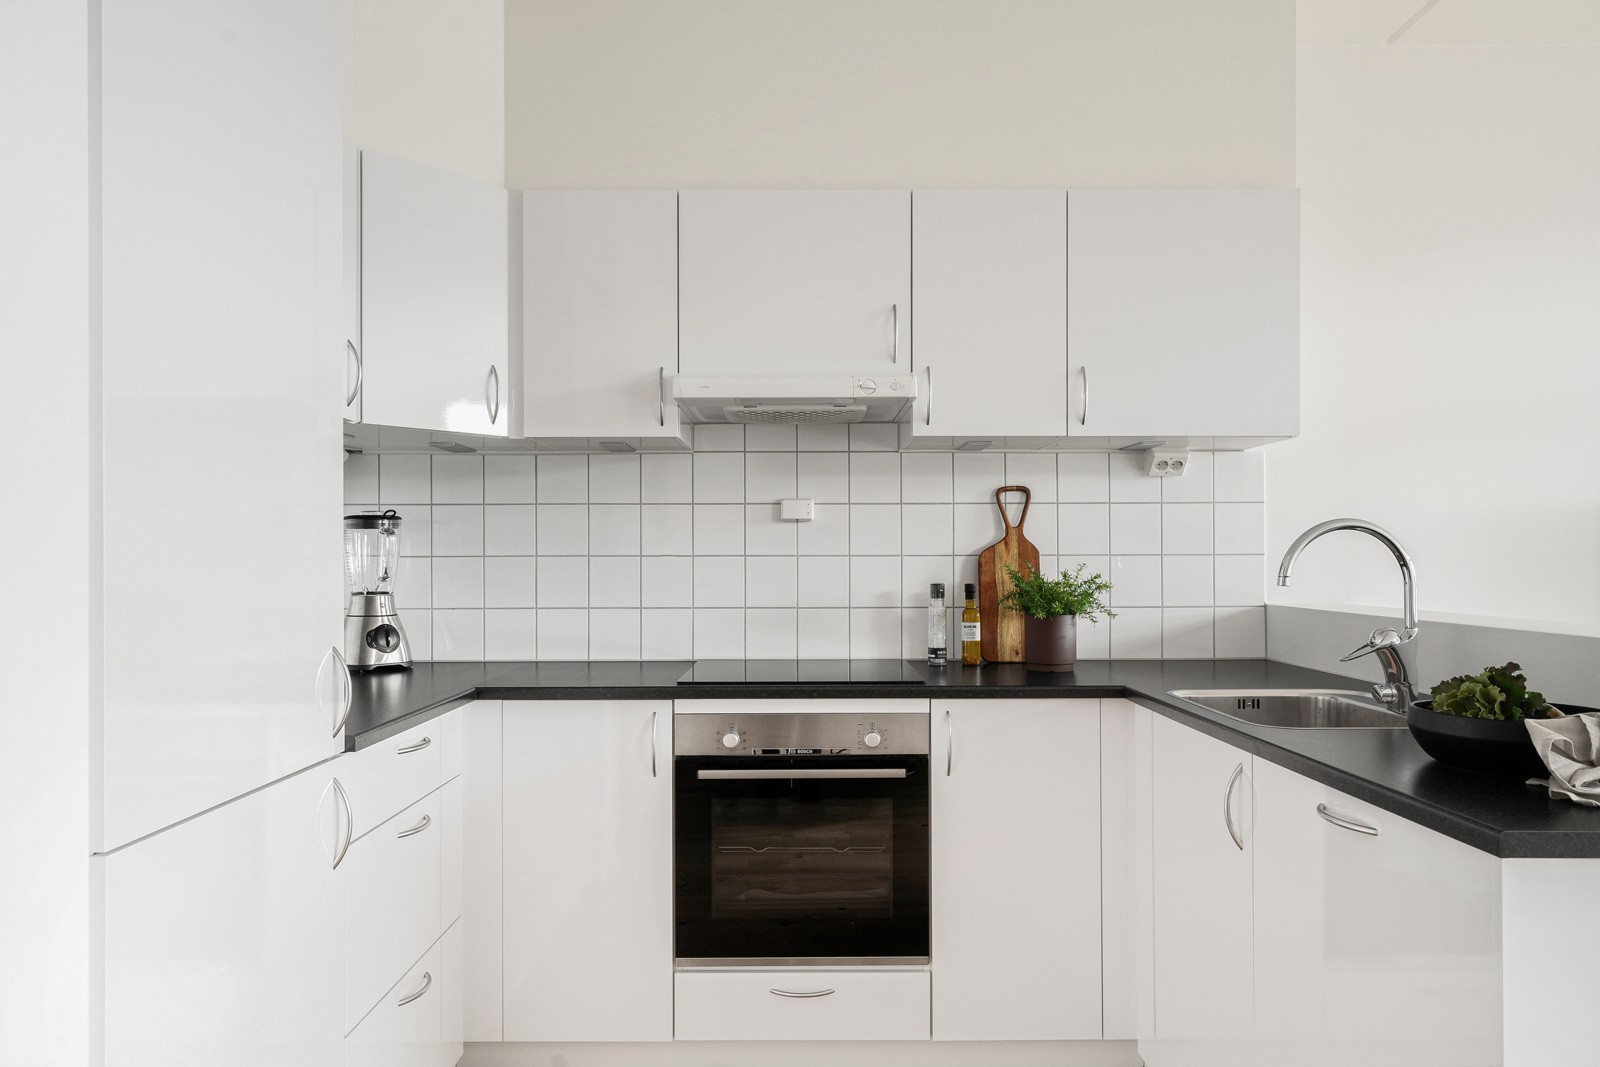 Kjøkkenhjørne med hvit innredning med over- og underskap som sikrer rikelig med oppbevaringsplass.